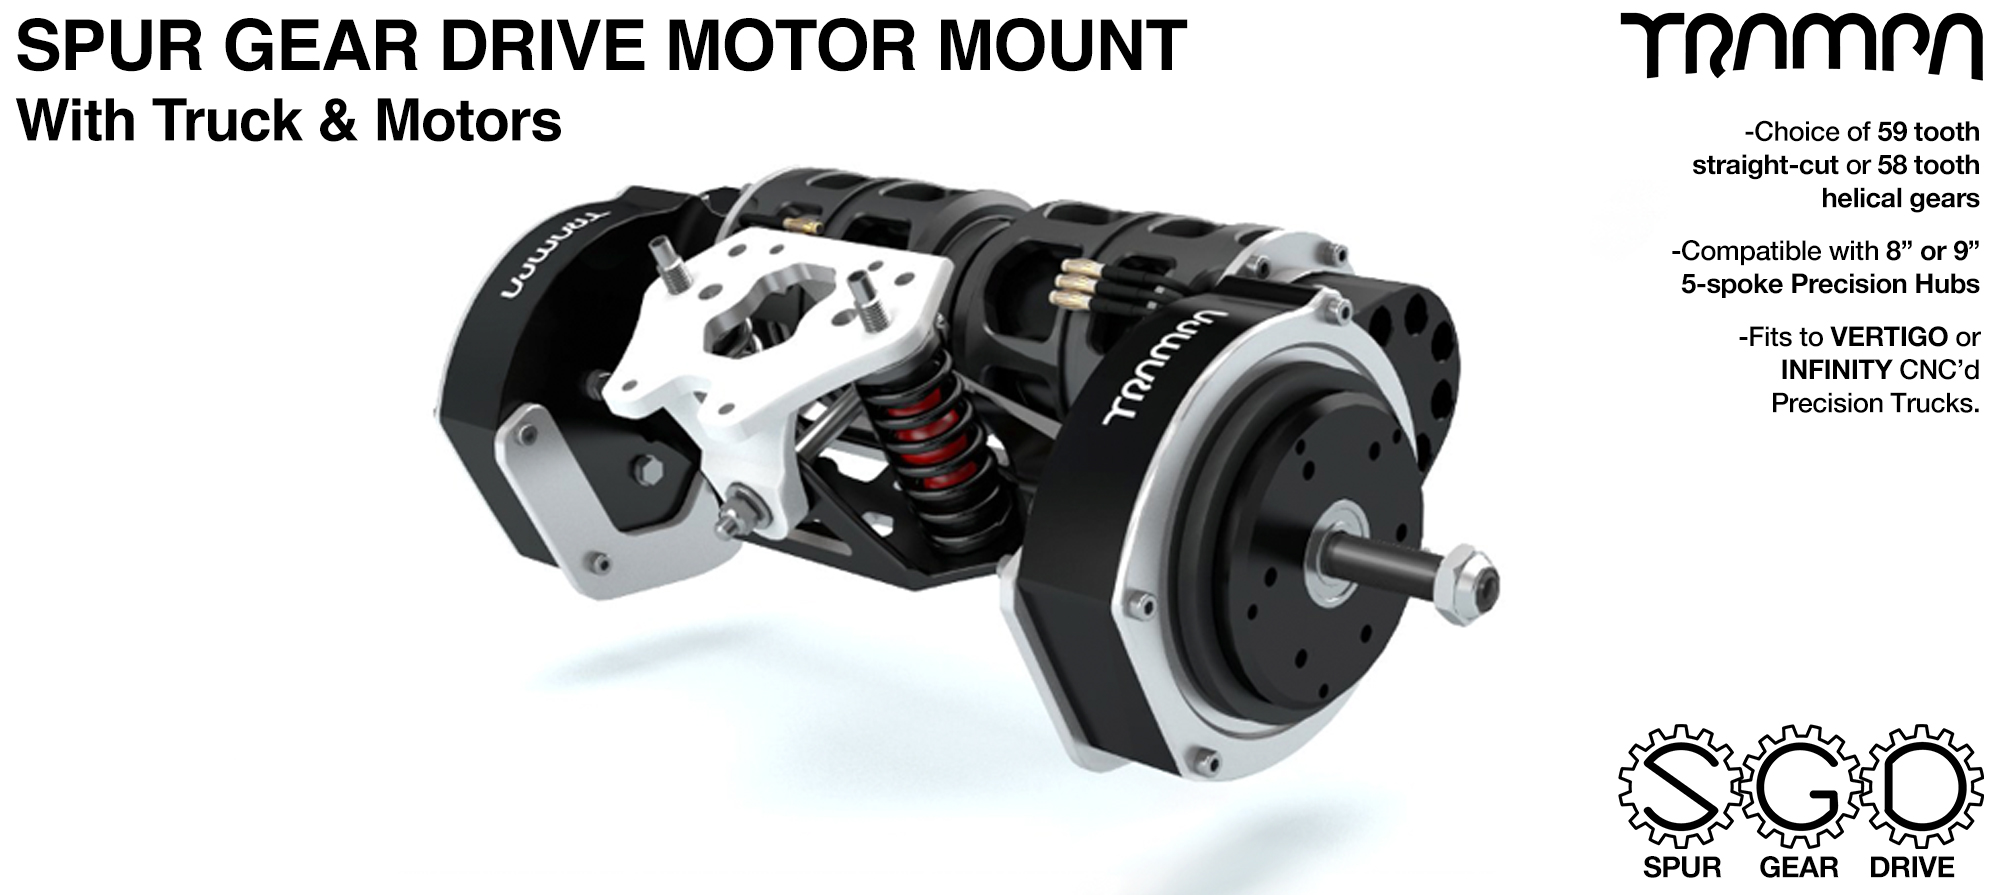 Mountainboard Spur Gear Drive TWIN Motor Mounts with Motors on a custom CHANNEL Truck 